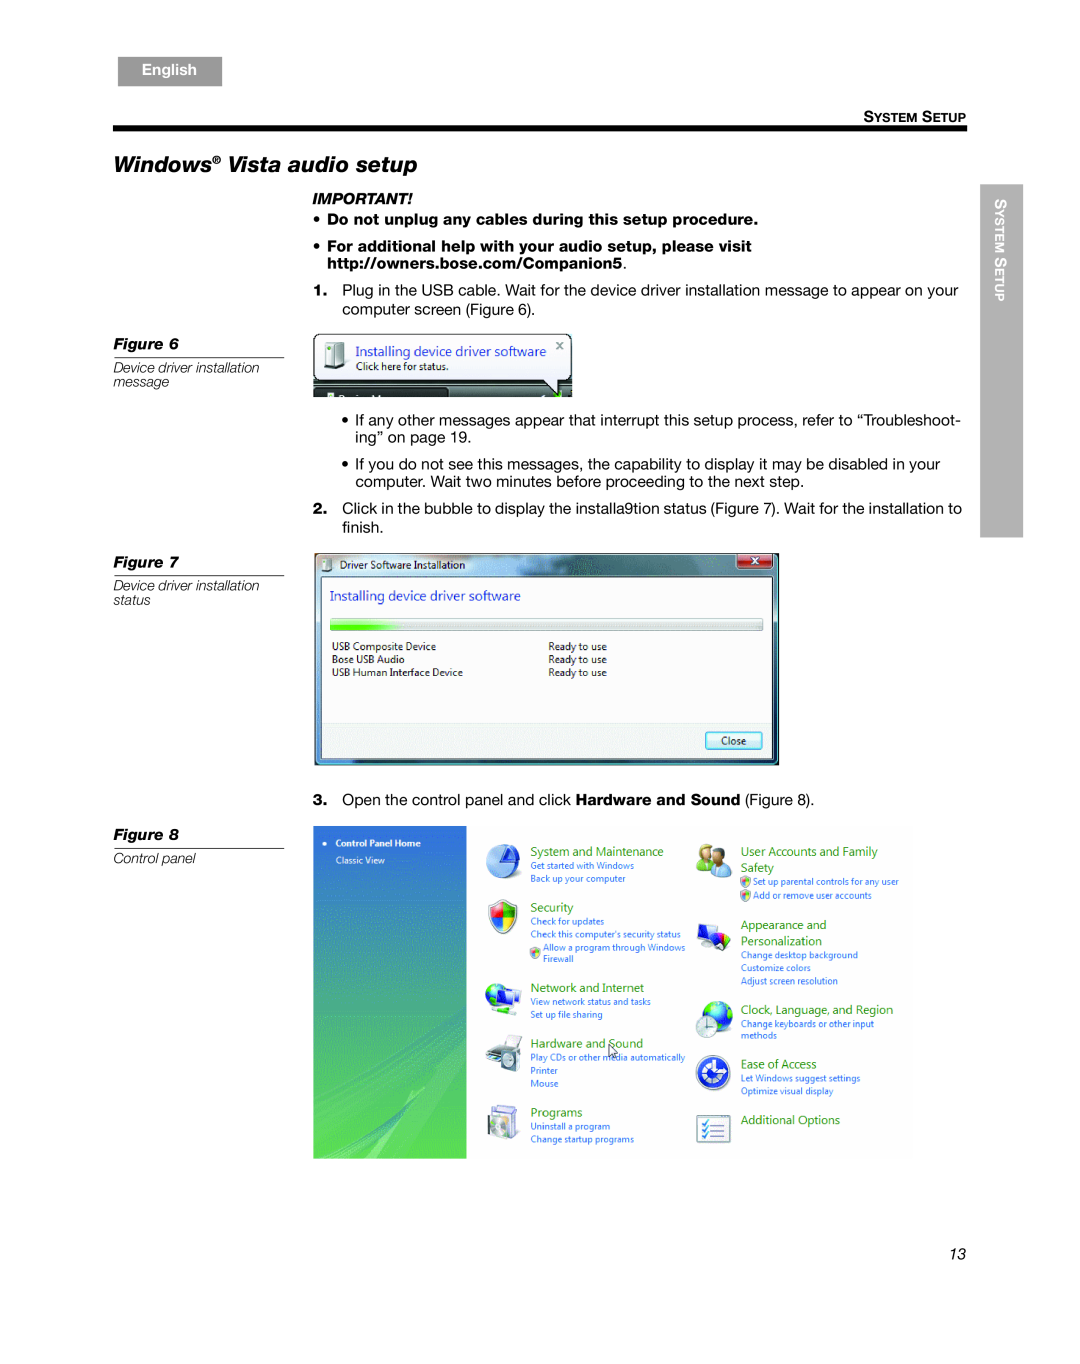 Bose Companion 5 manual Windows Vista audio setup, English, Español, Français 